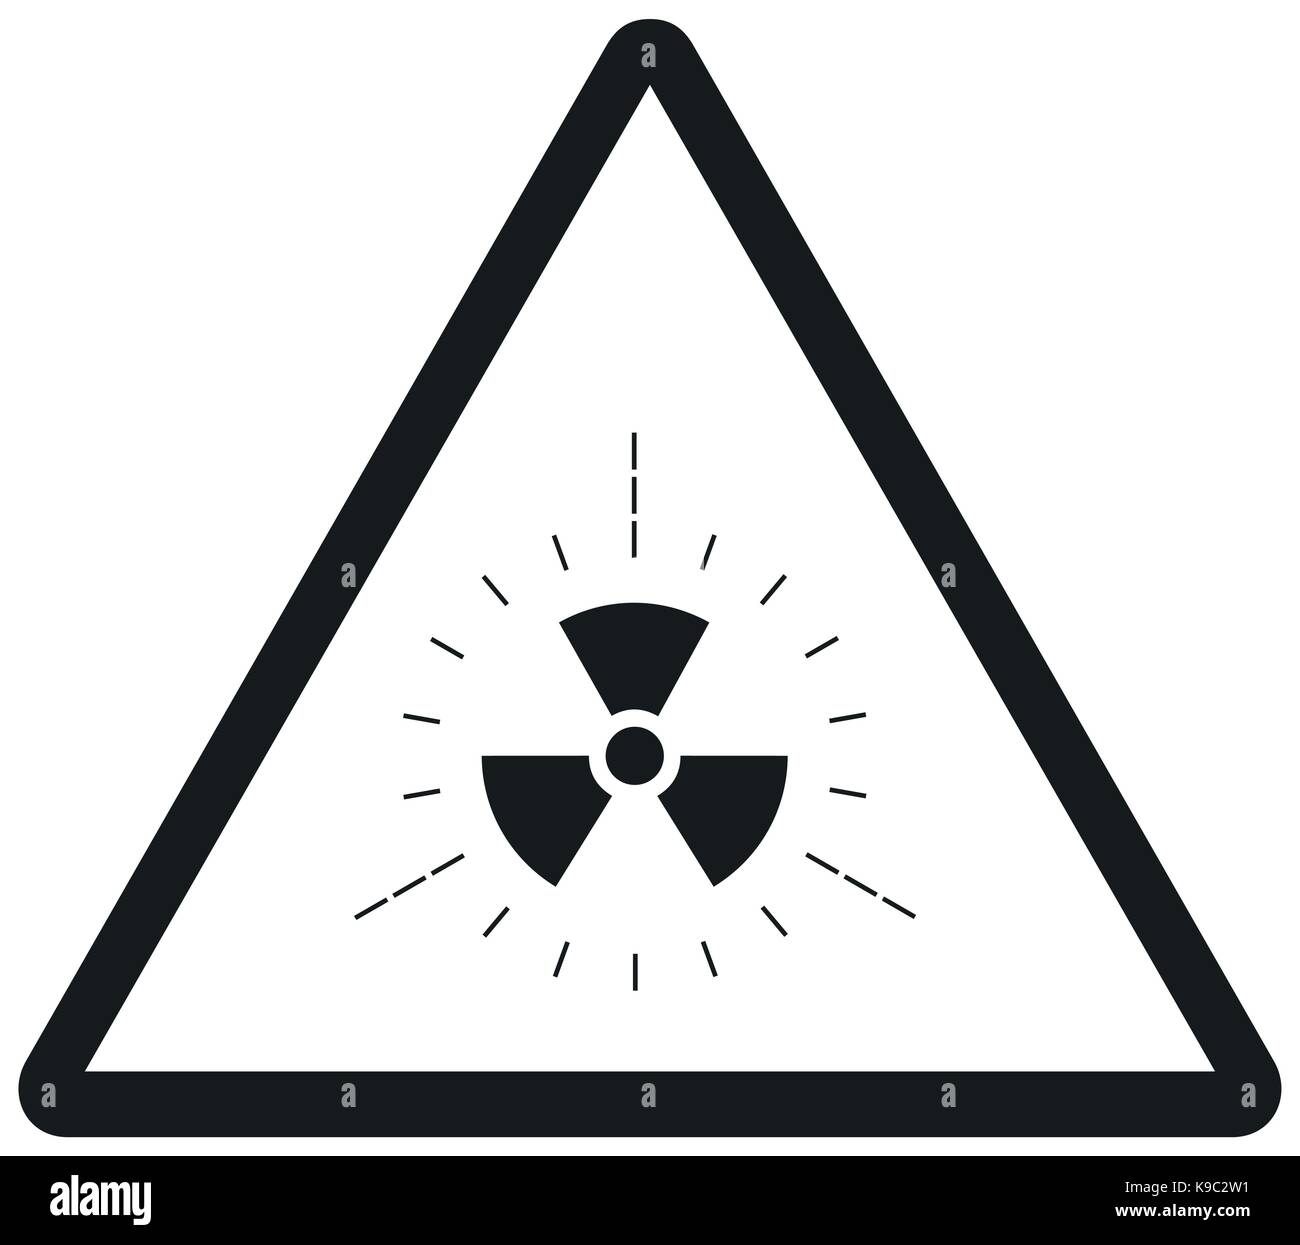 Radiation warning sign Stock Vector